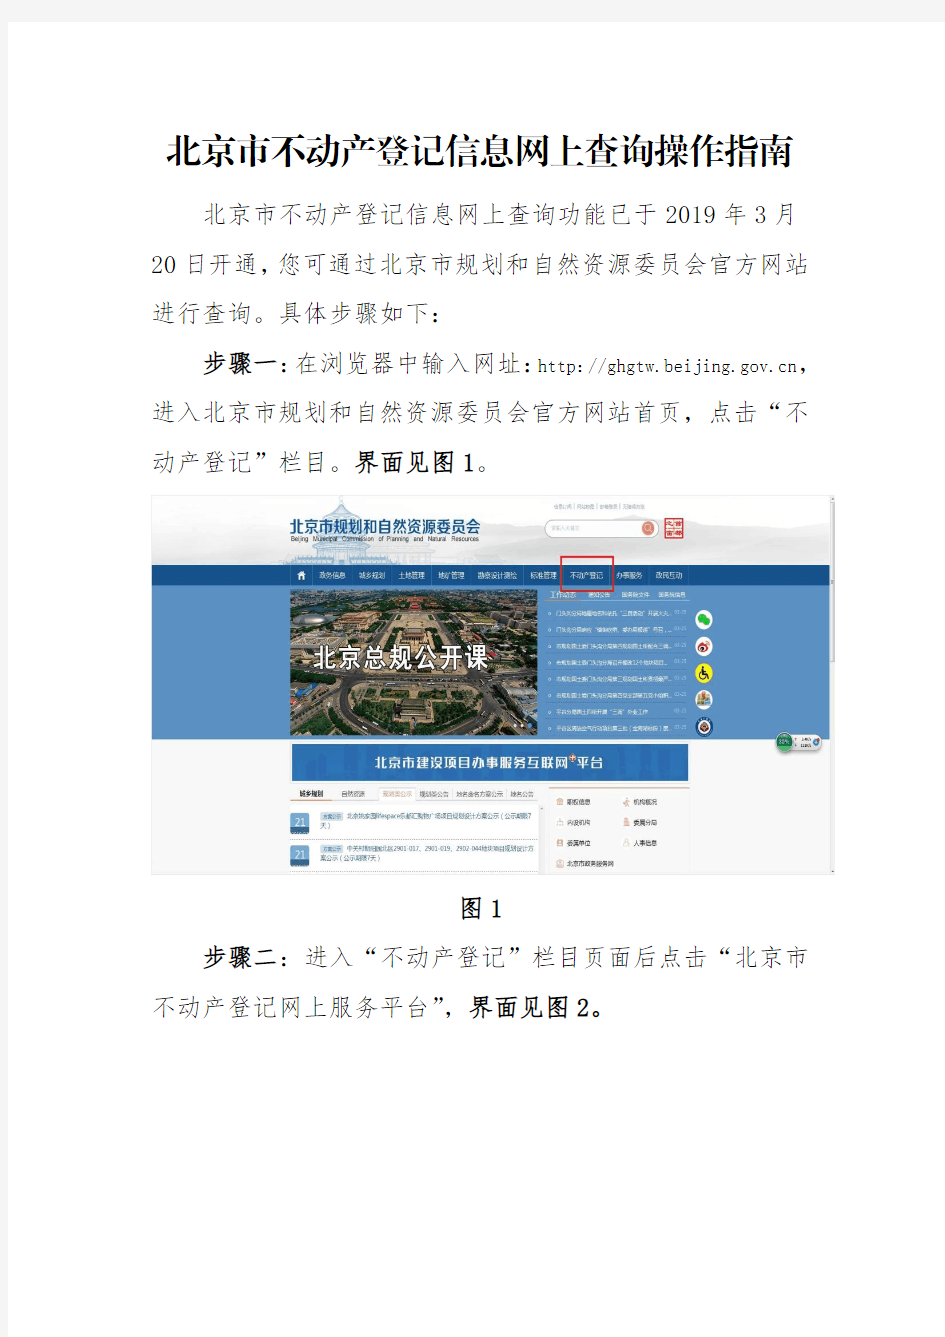 北京市不动产登记信息网上查询操作指南